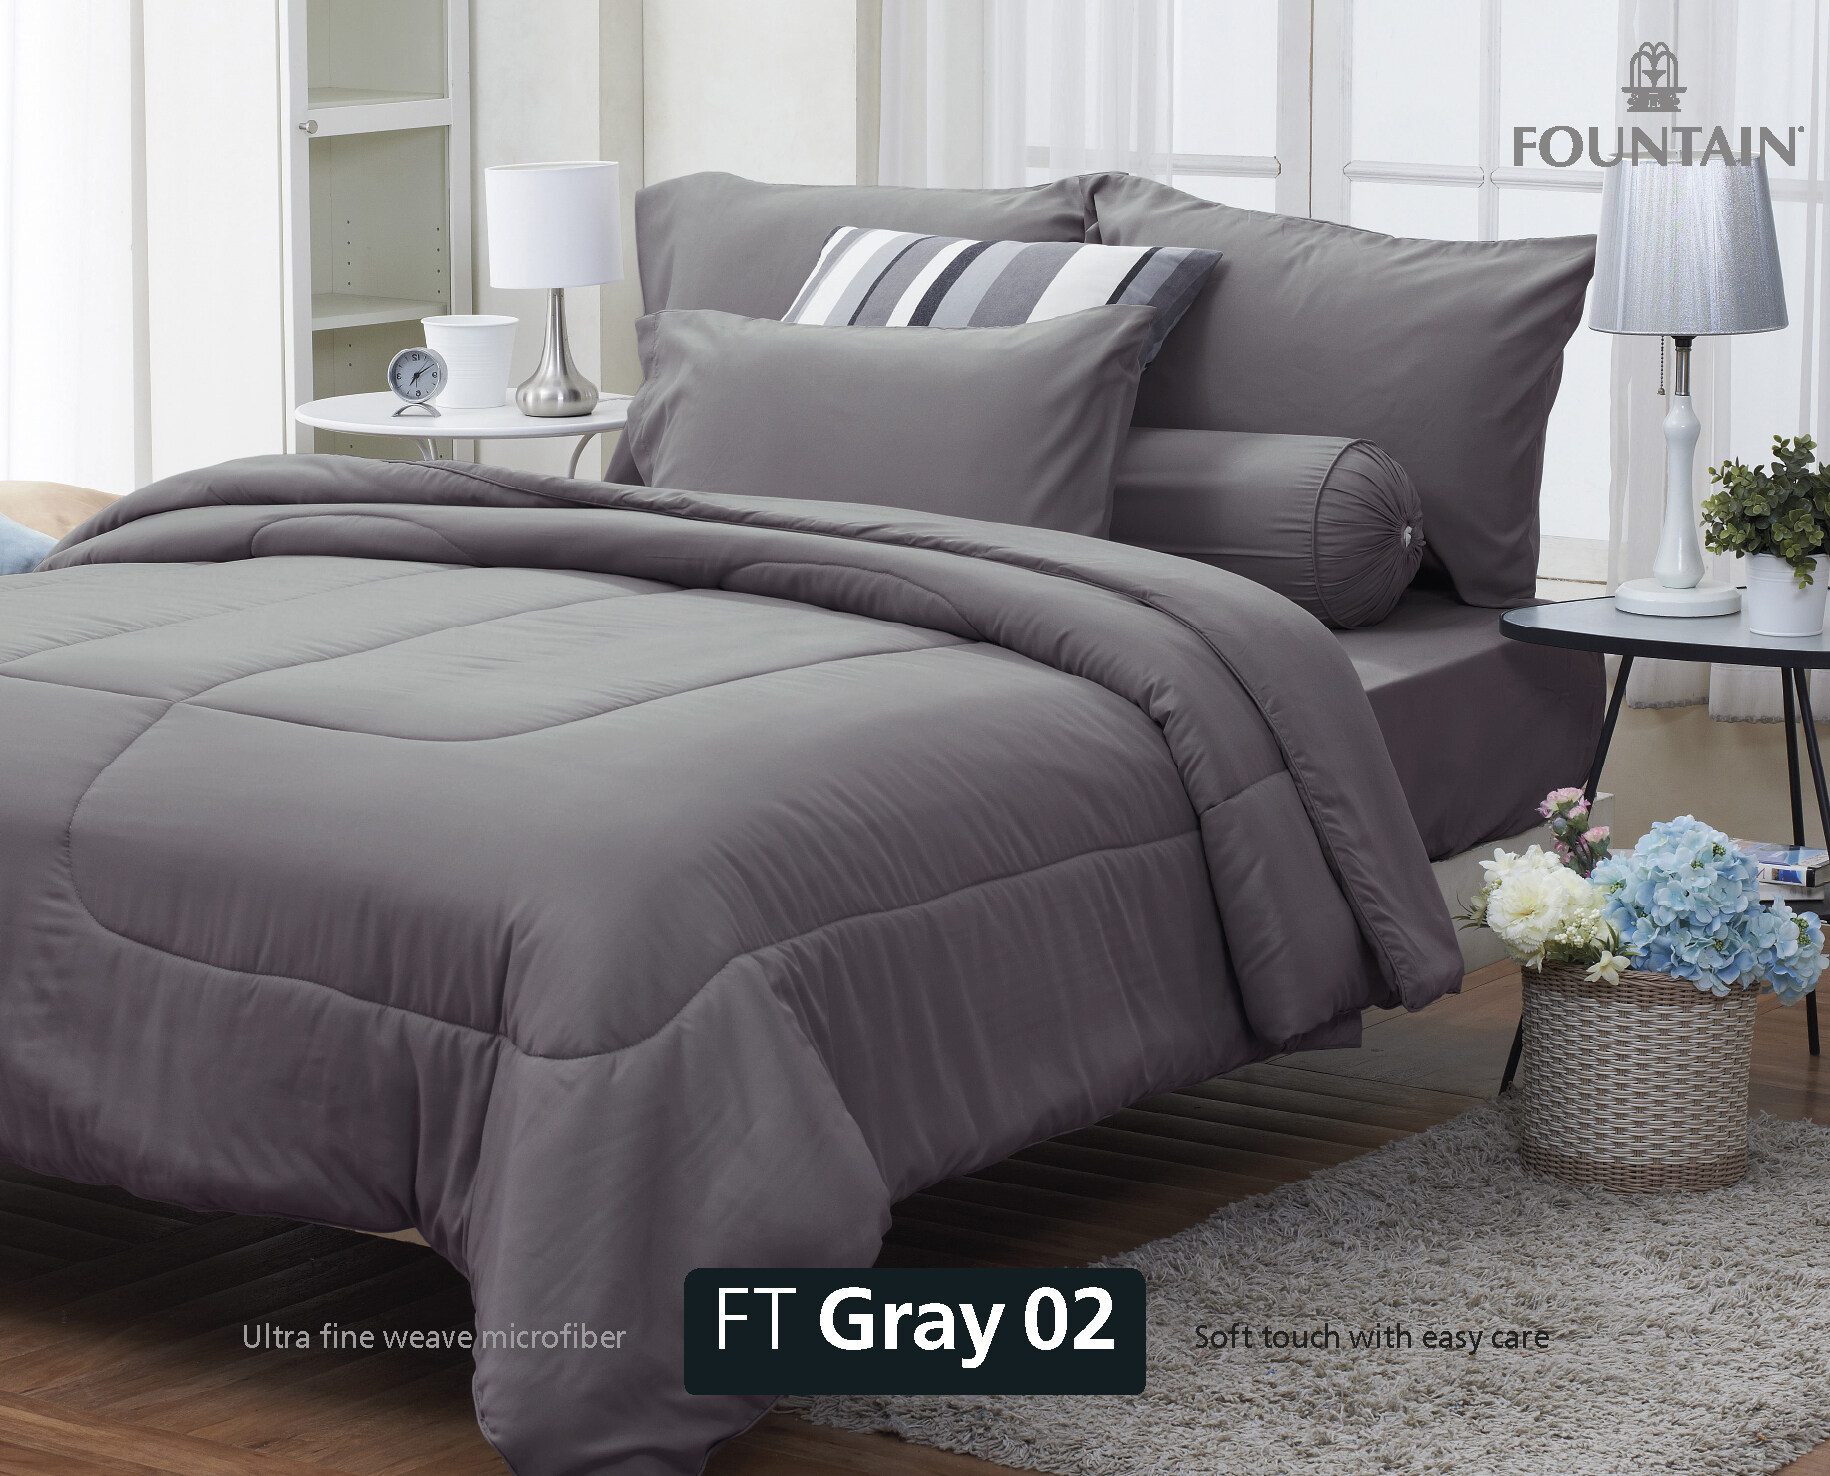 FOUNTAIN ผ้านวม + ชุดผ้าปู ผ้าปู ที่นอน แท้ 100% FTC สีพื้น เขียว Green Gray เทา ขนาด 3.5 5 6ฟุต ชุดเครื่องนอน ผ้านวม ผ้าปูที่นอน wonderful bedding  สี → Gray2ขนาดสินค้า 6 ฟุต